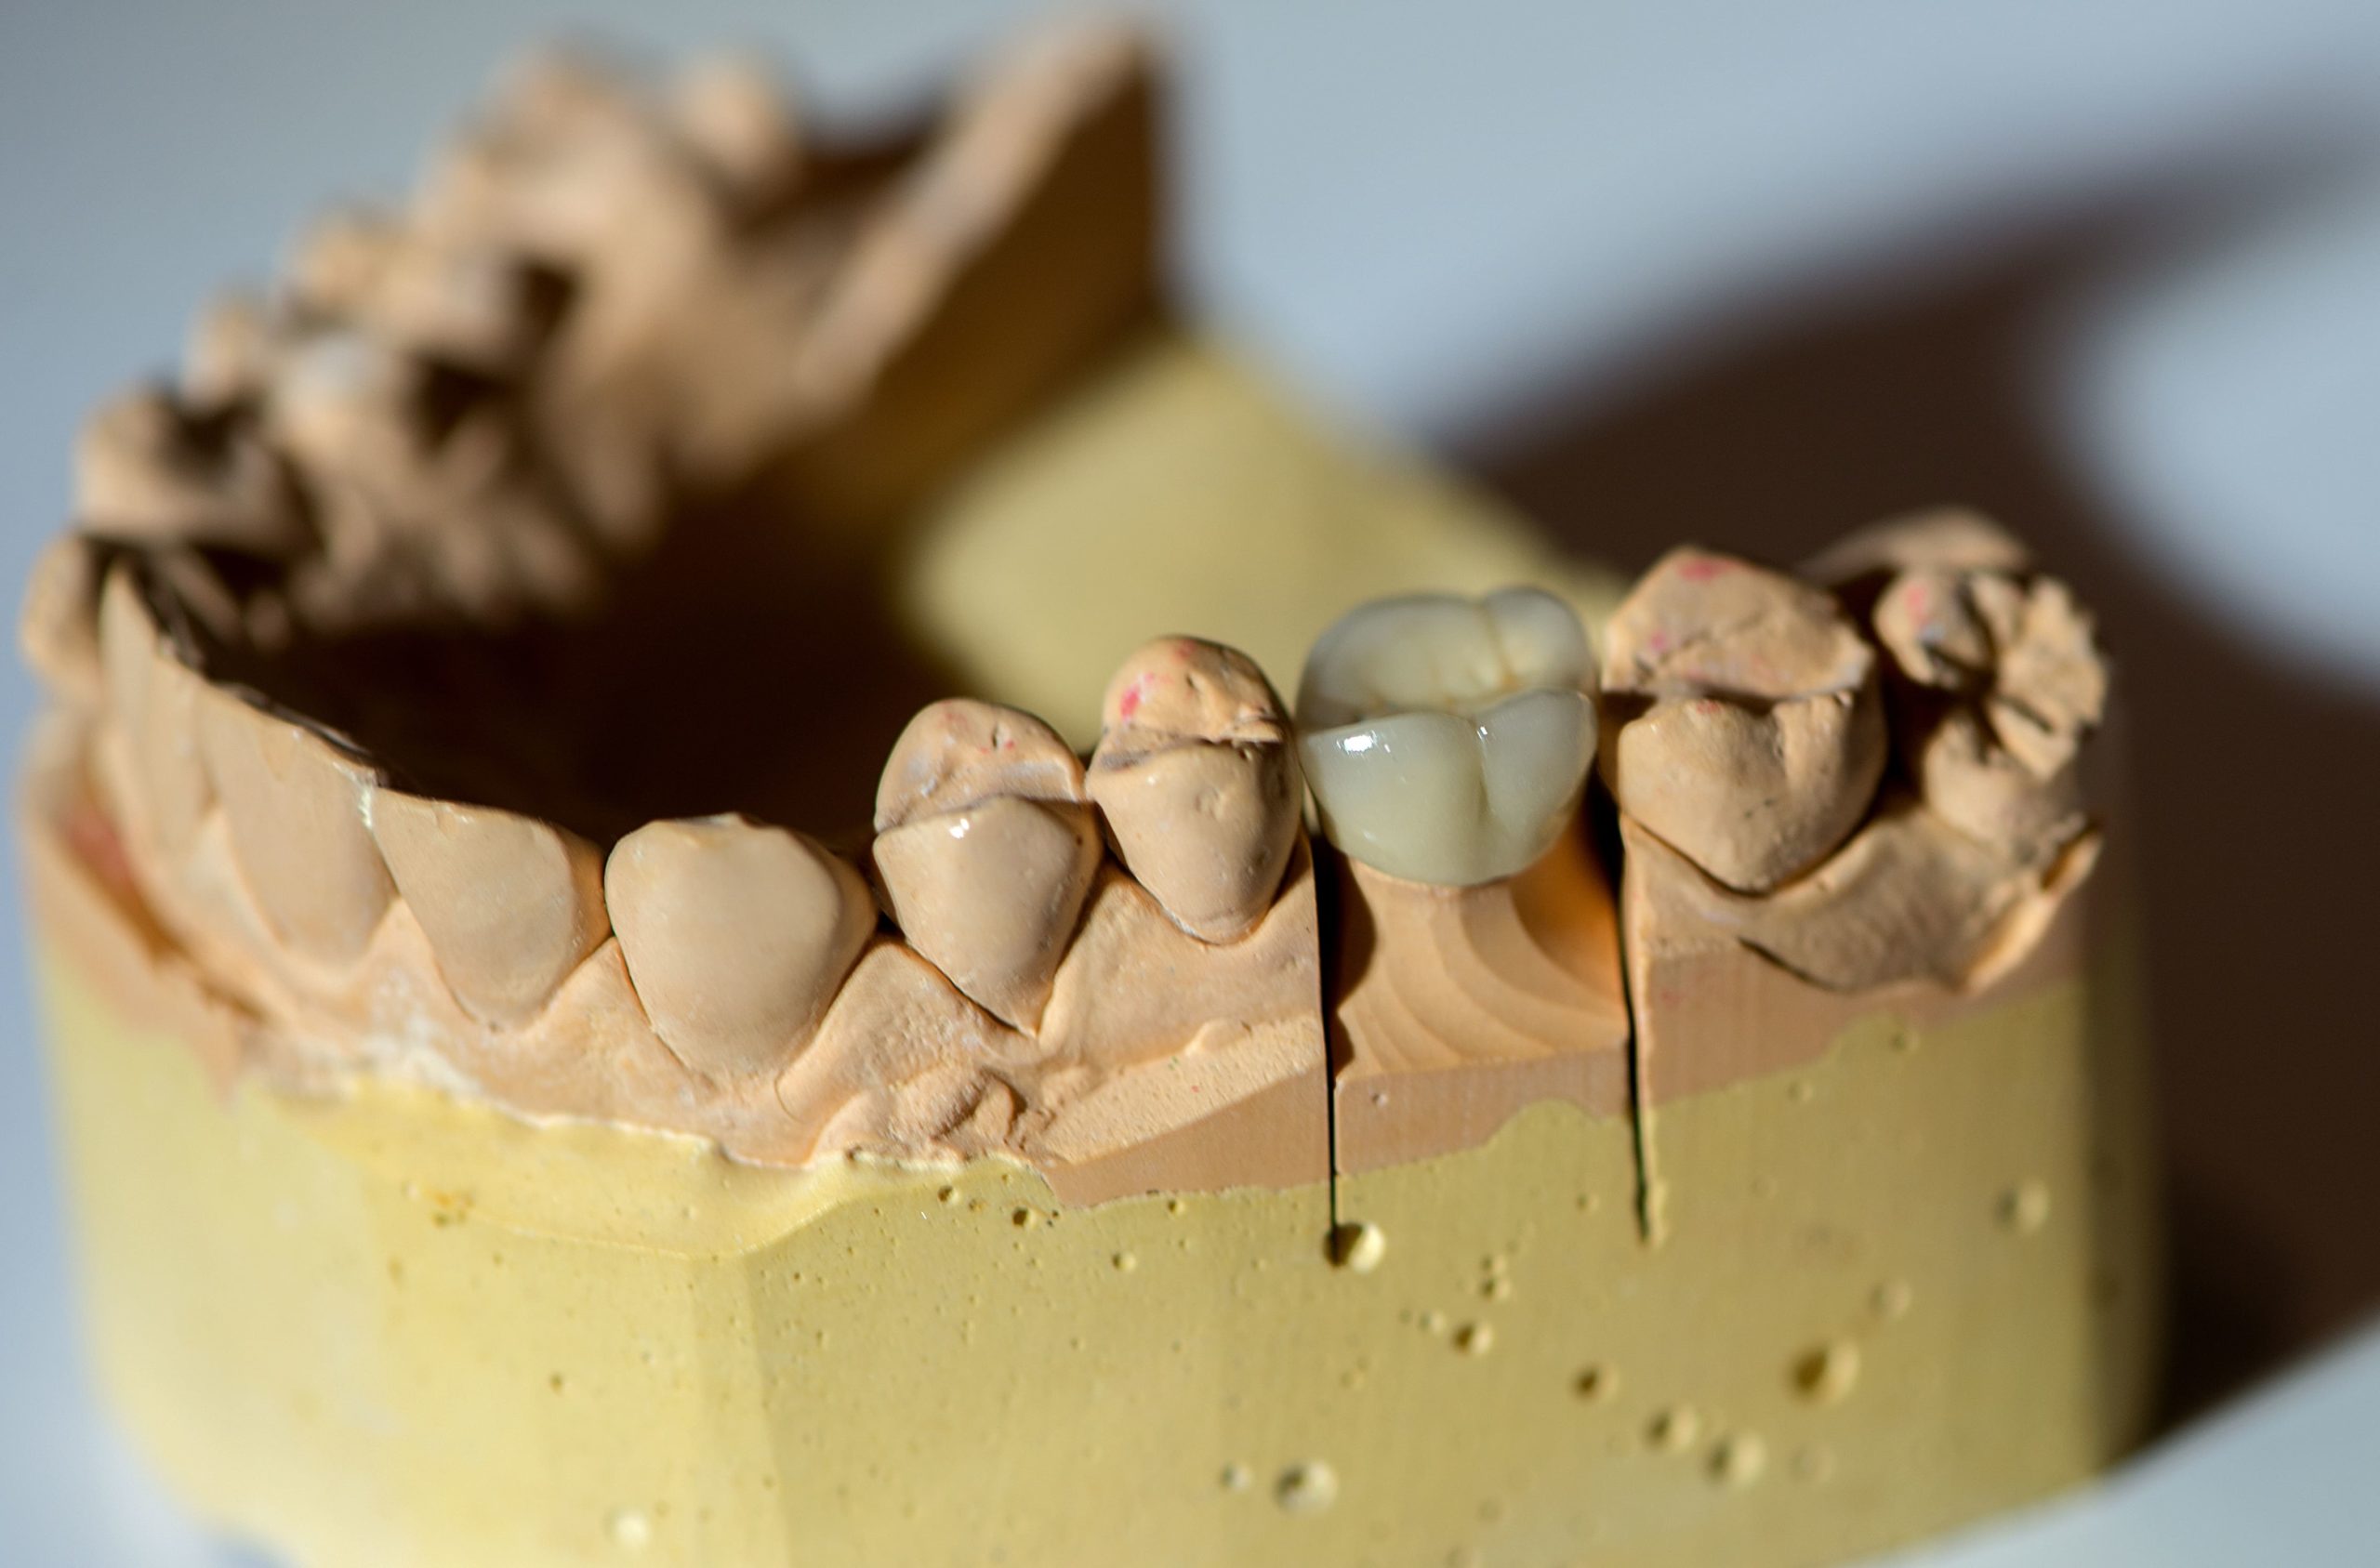 Crown dental